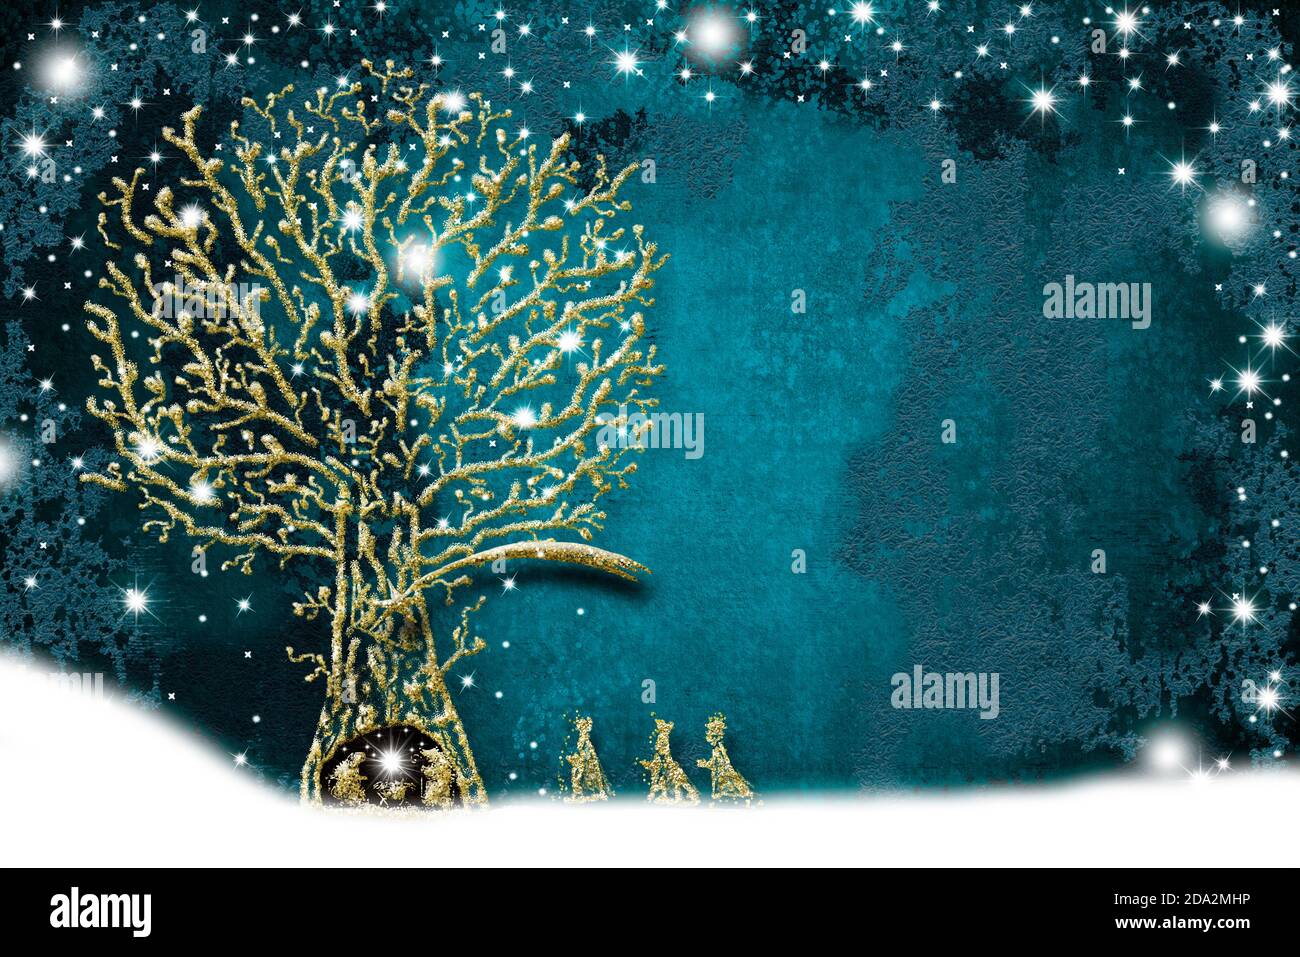 Cartes de voeux pour la scène Nativité de Noël, dessin abstrait à main levée de la scène Nativité, trois Sages, neige et arbre avec paillettes dorées sur le Pape bleu Banque D'Images